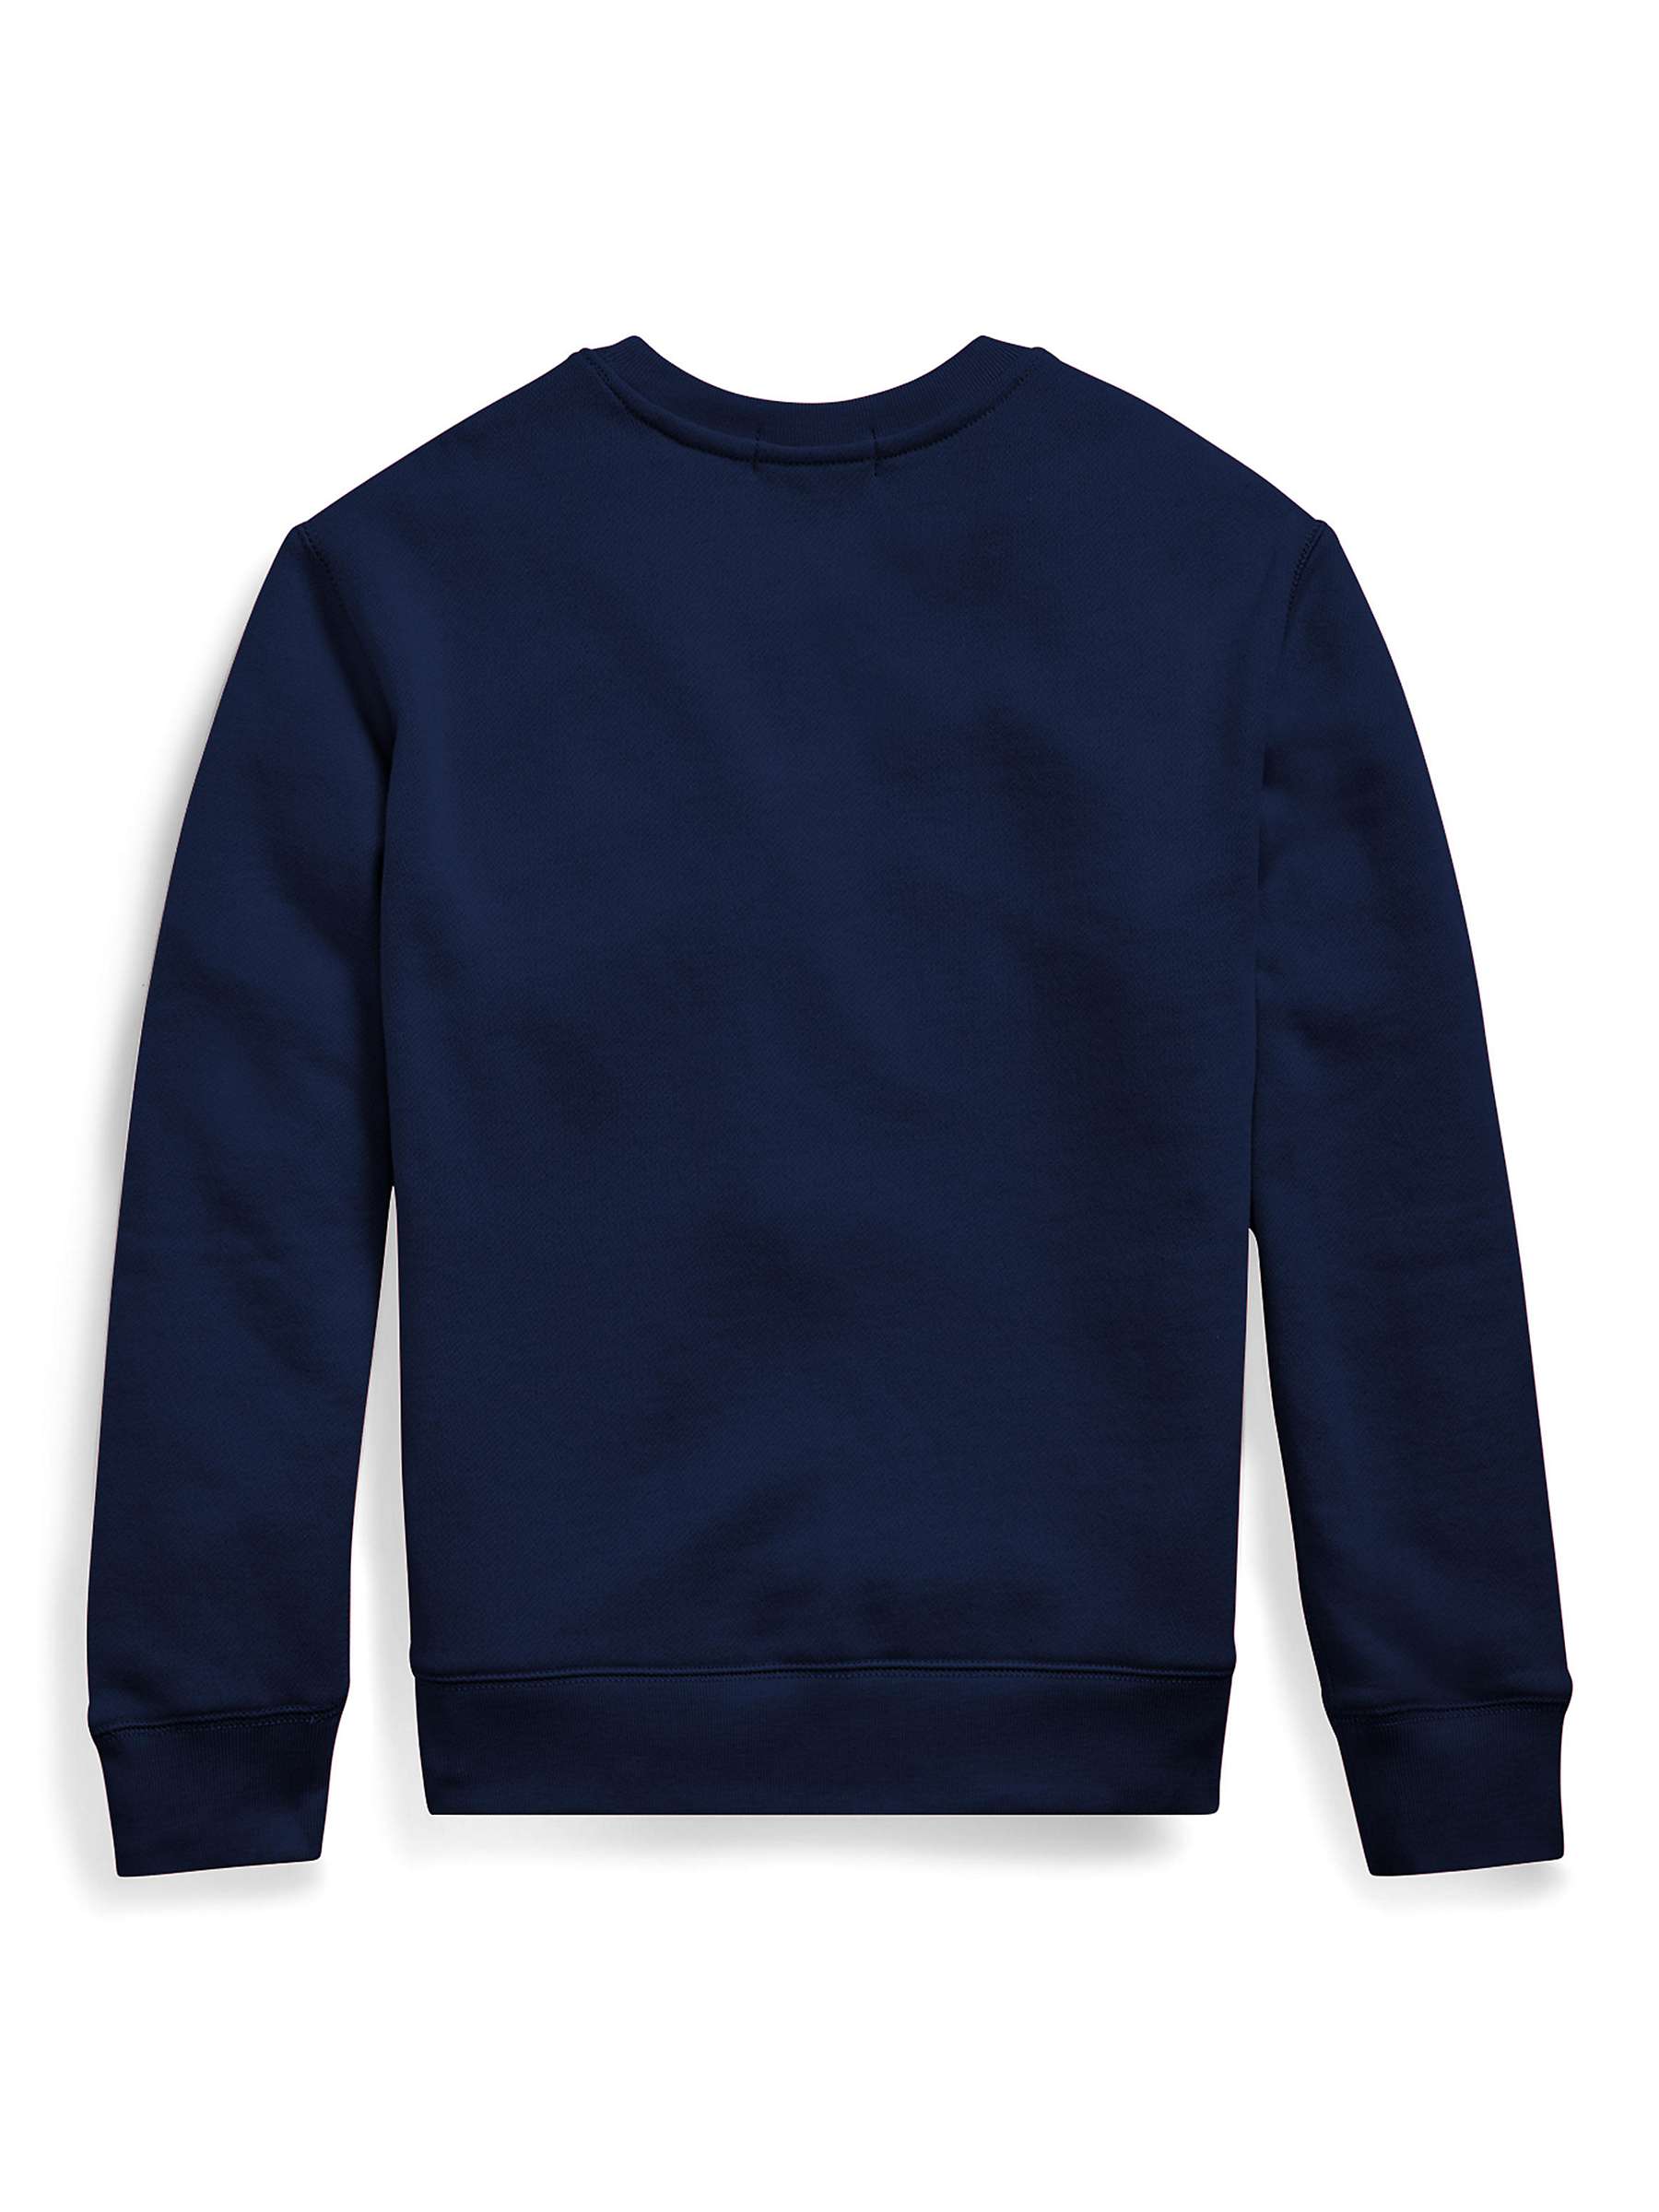 Buy Ralph Lauren Kids' Logo Basic Crew Neck Sweatshirt, Navy Online at johnlewis.com